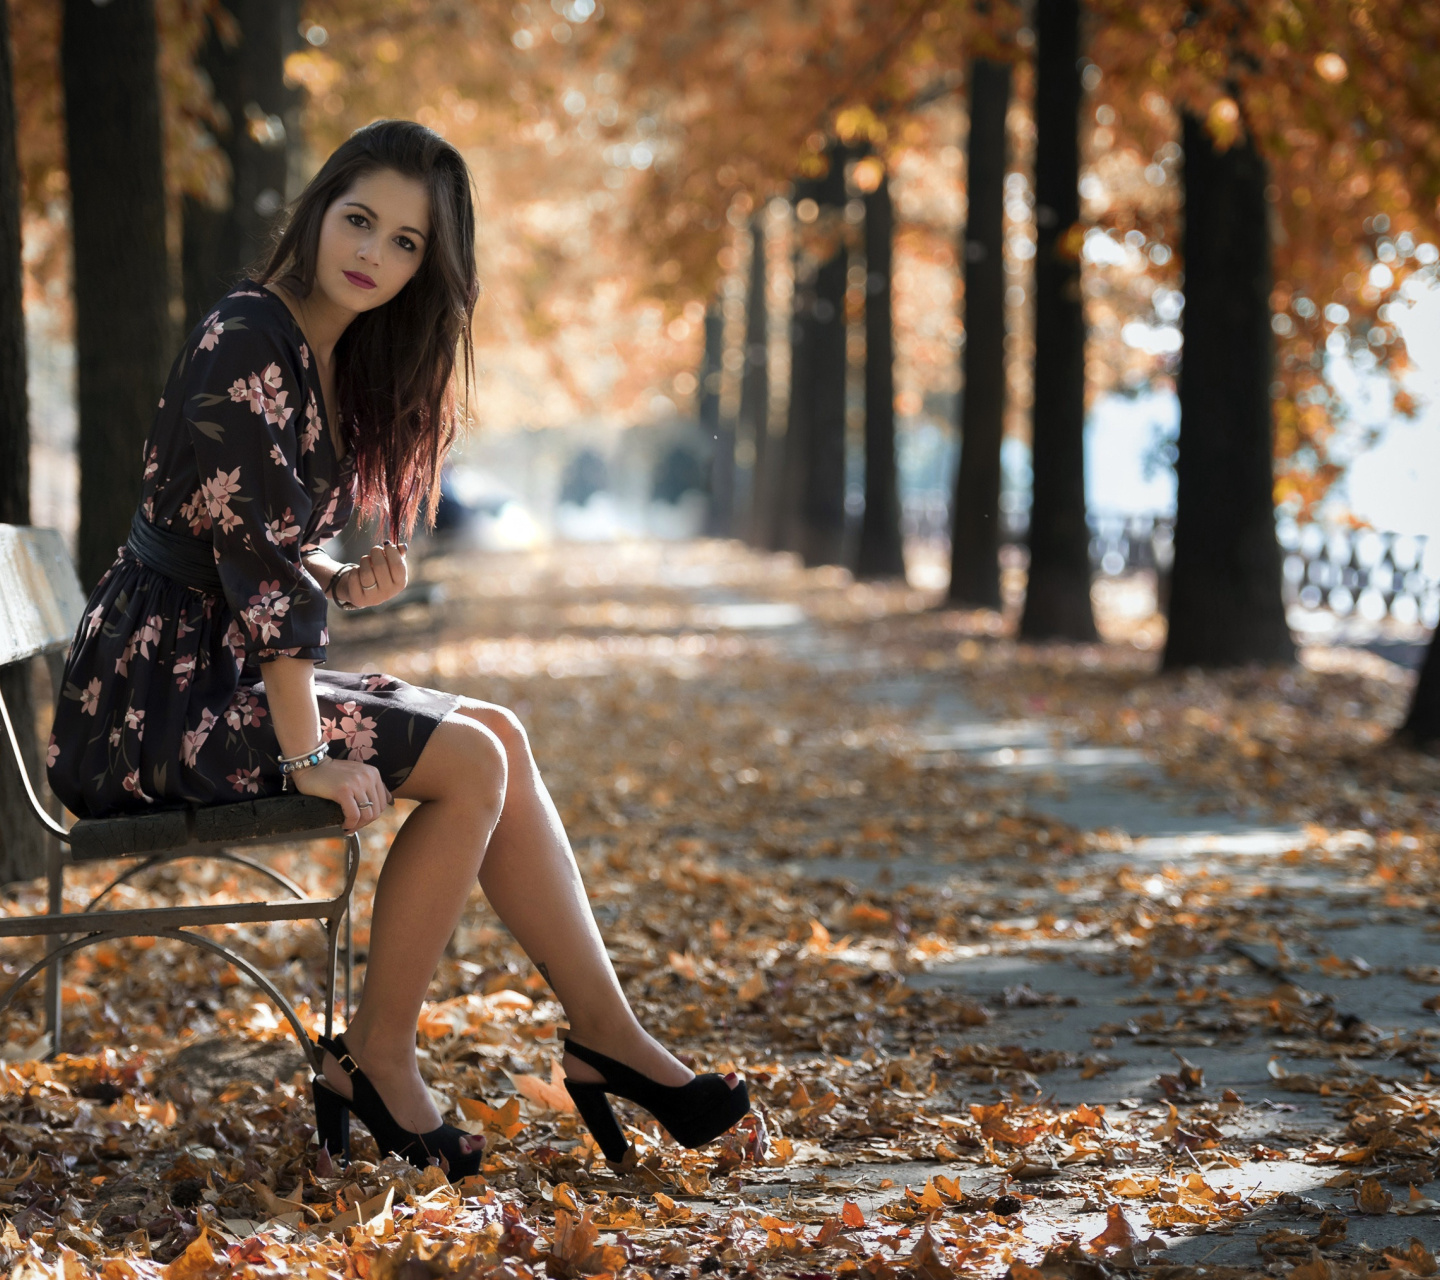 Caucasian joy girl in autumn park screenshot #1 1440x1280